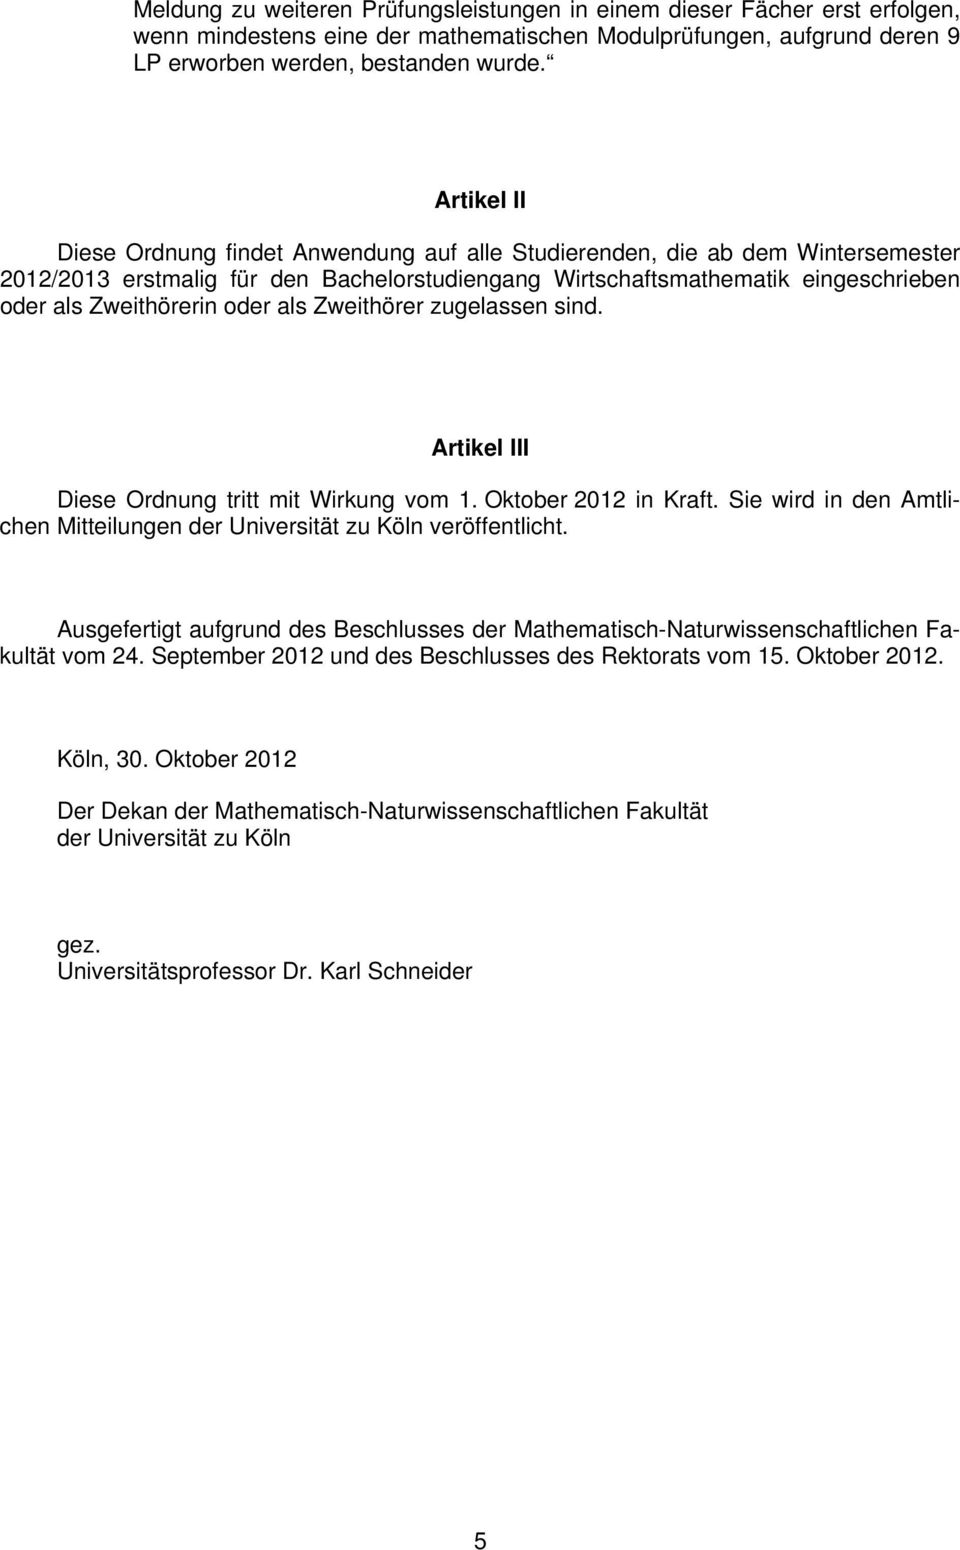 oder als Zweithörer zugelassen sind. Artikel III Diese Ordnung tritt mit Wirkung vom 1. Oktober 2012 in Kraft. Sie wird in den Amtlichen Mitteilungen der Universität zu Köln veröffentlicht.